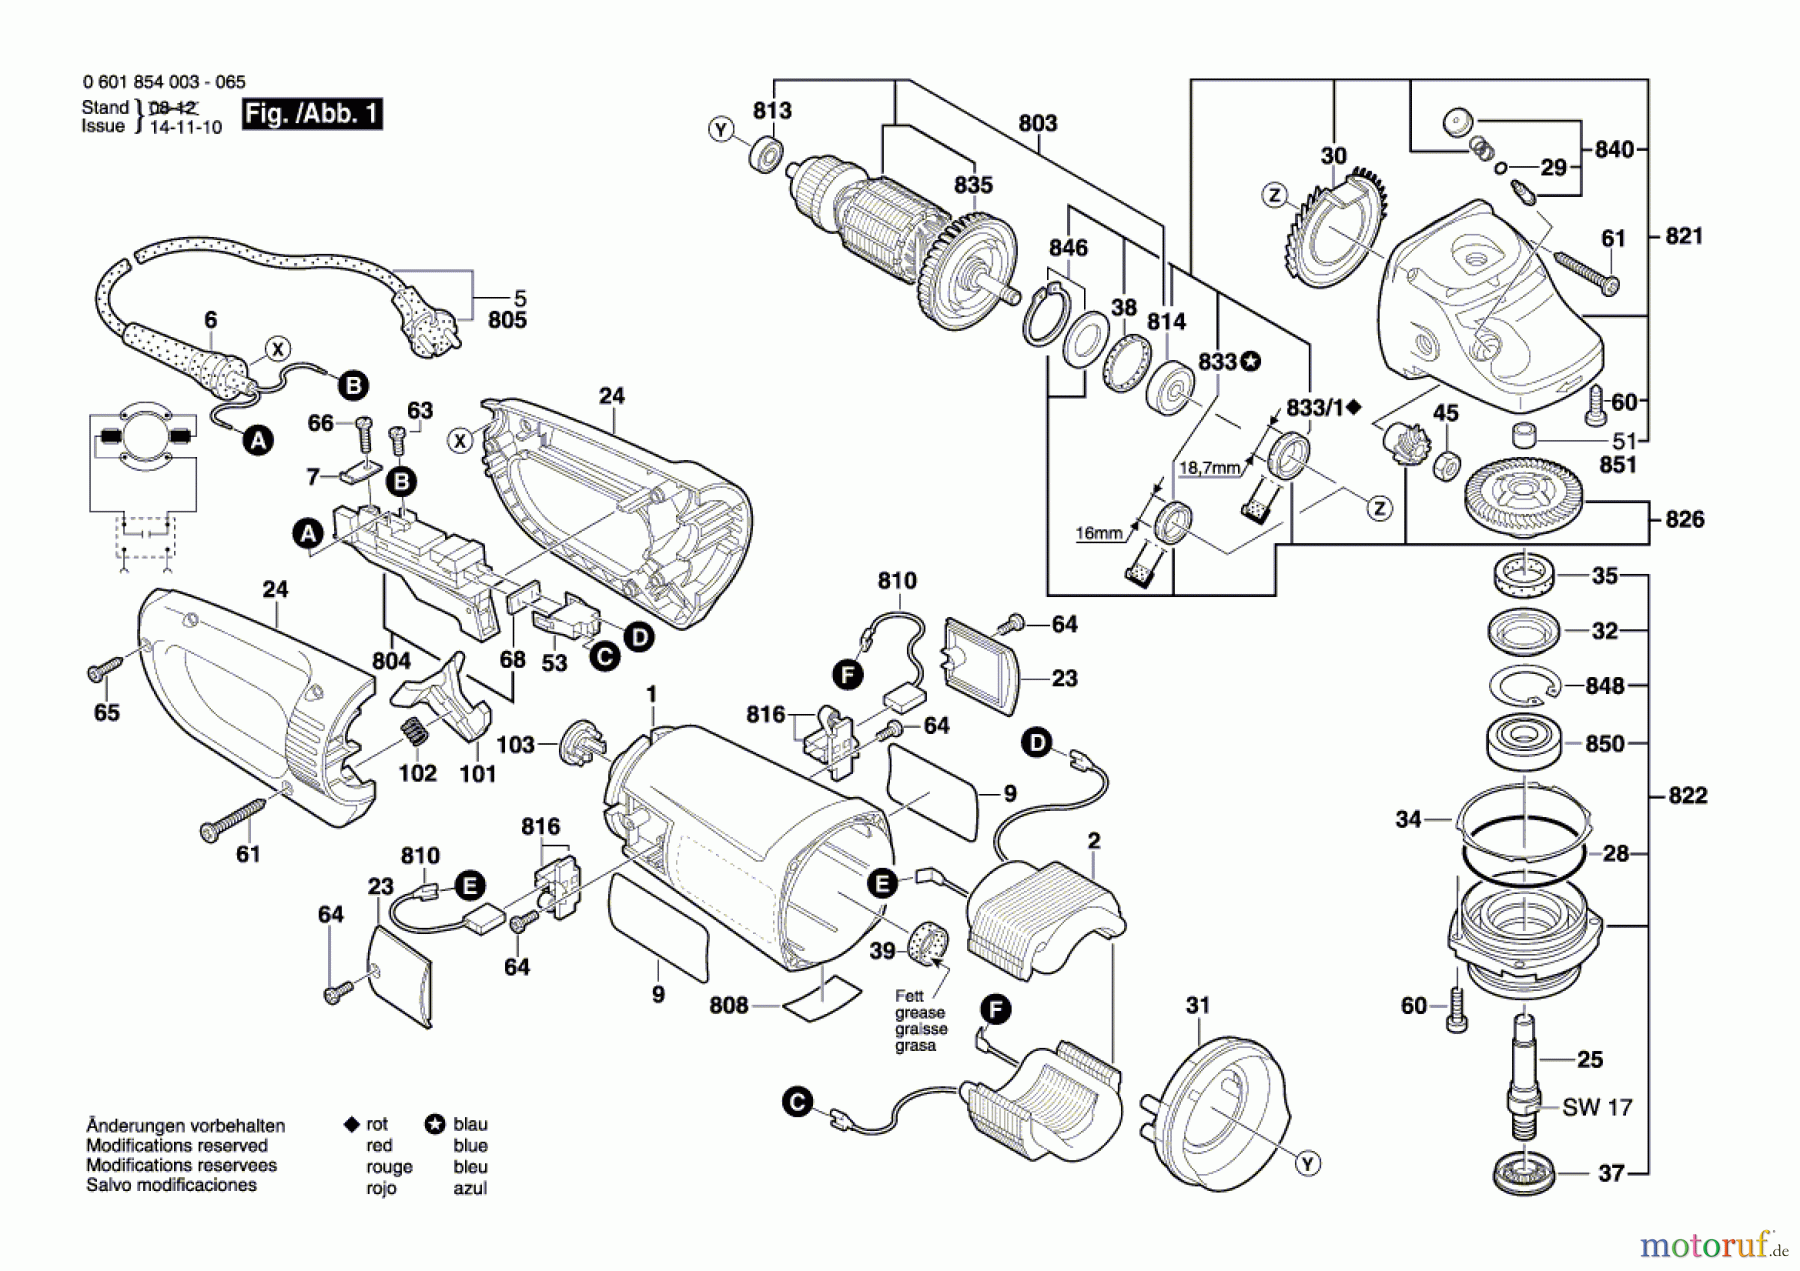  Bosch Werkzeug Winkelschleifer GWS 24-230 B Seite 1